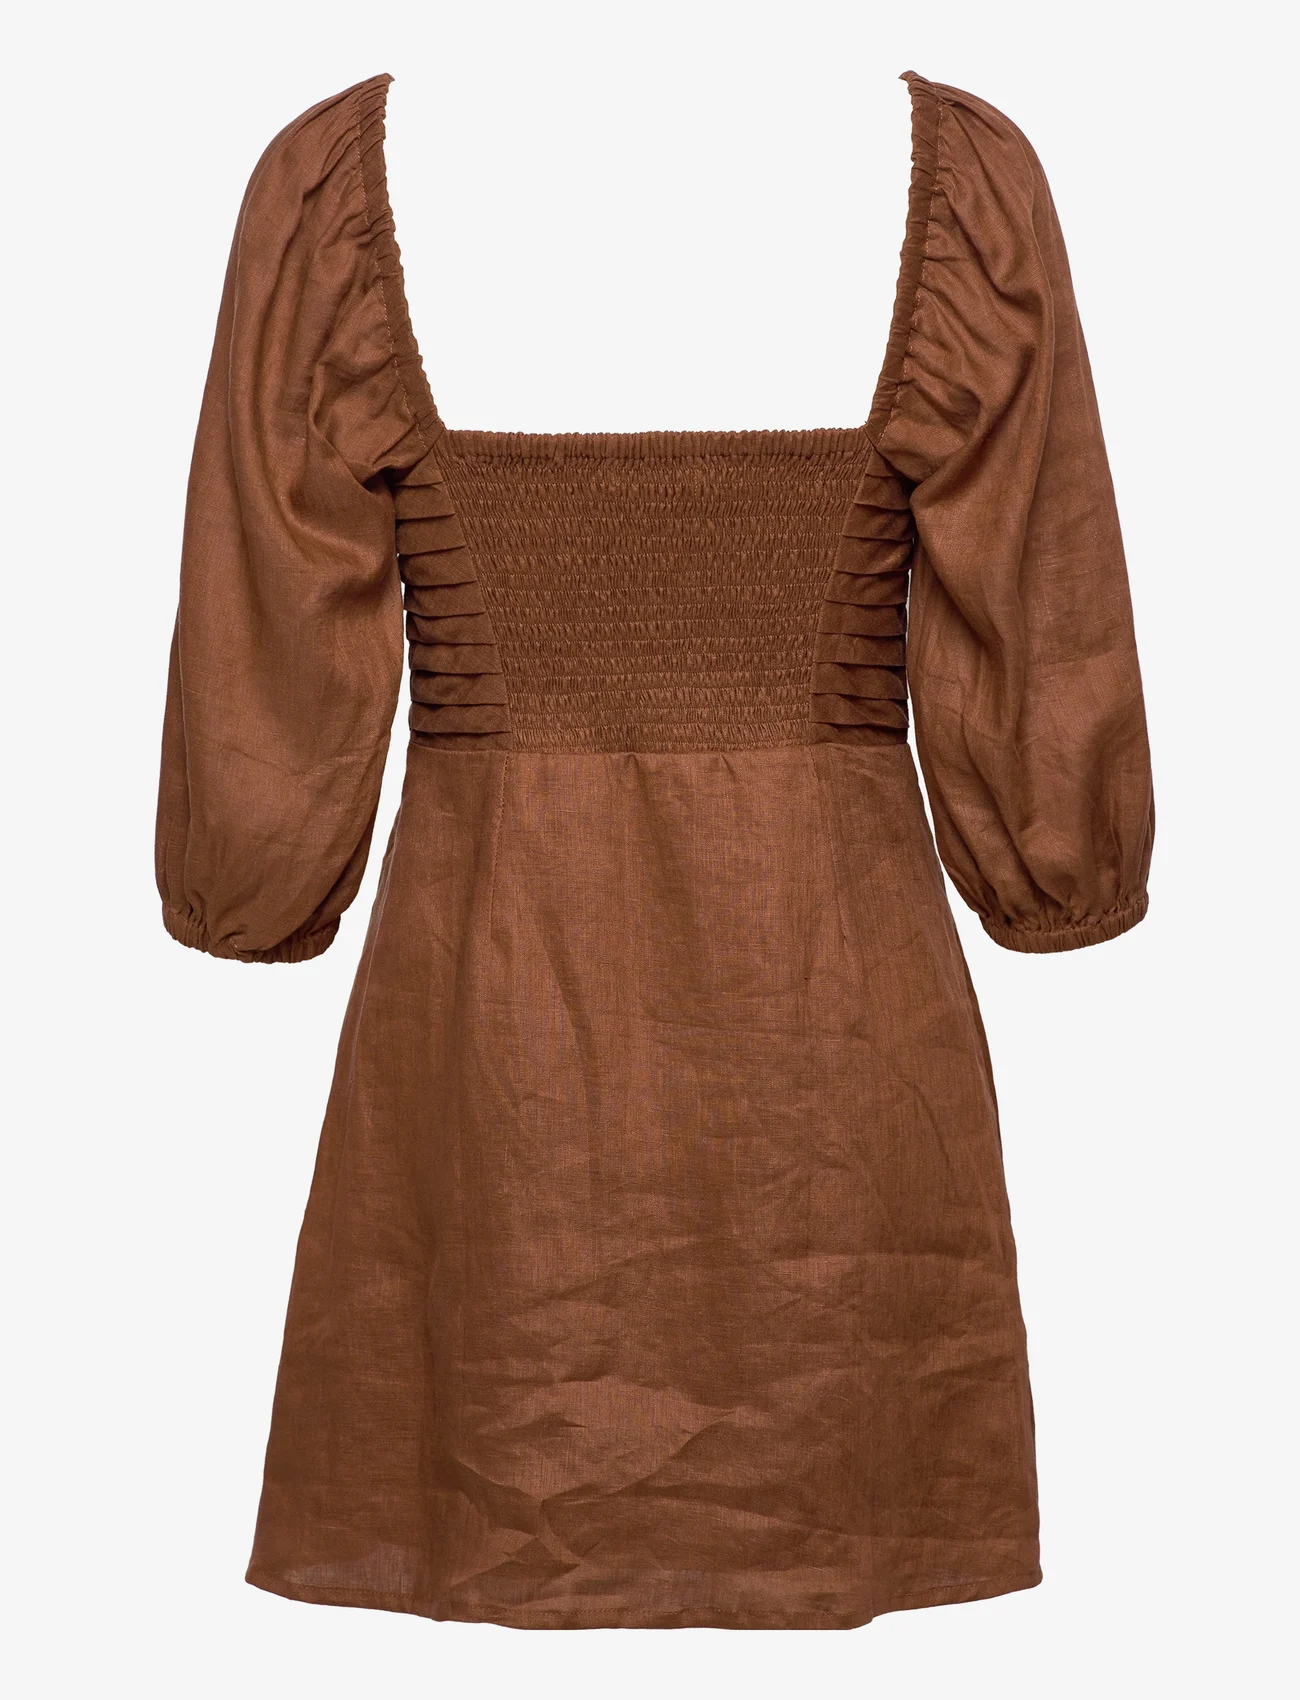 Faithfull The Brand - VENEZIA MINI DRESS - korte kjoler - cinnamon - 1